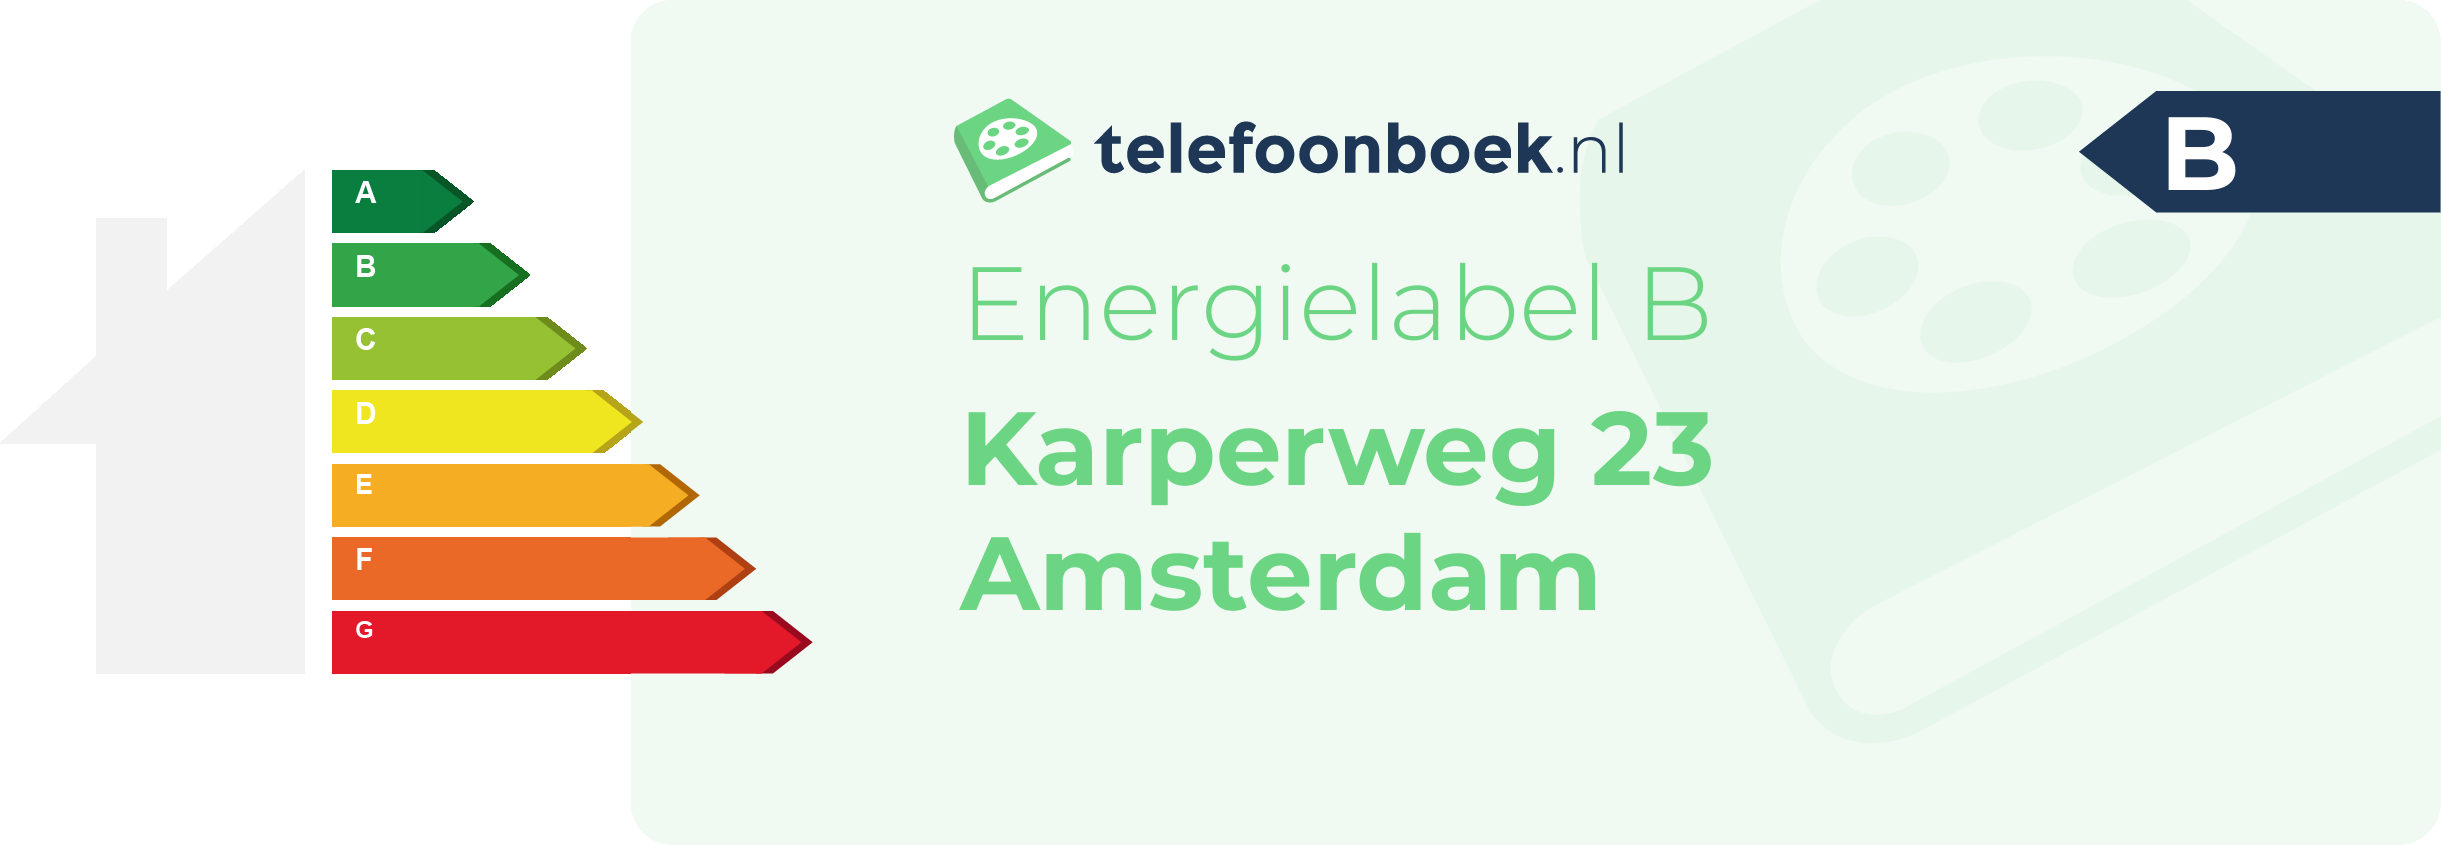 Energielabel Karperweg 23 Amsterdam